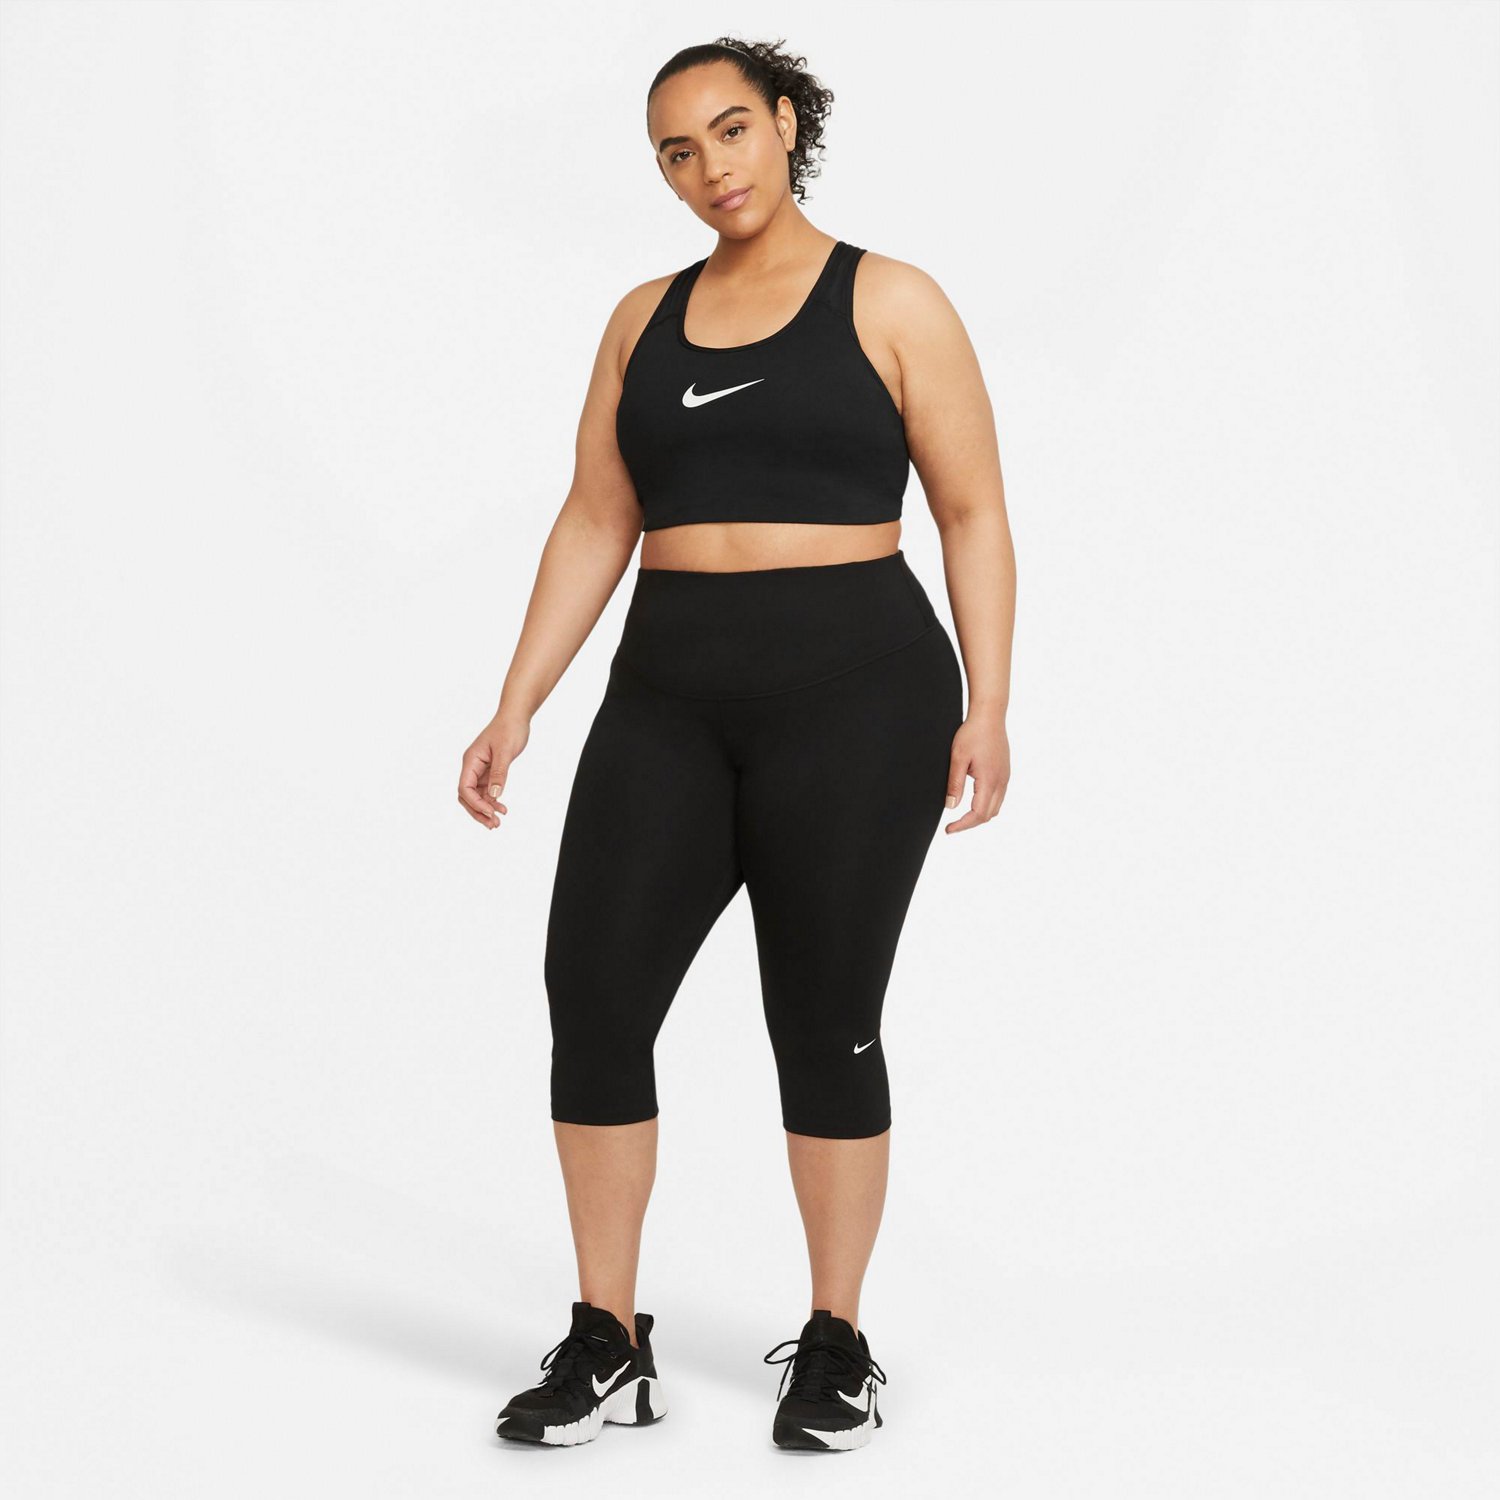 Nike Go Women's Firm-Support High-Waisted Capri Leggings, 46% OFF